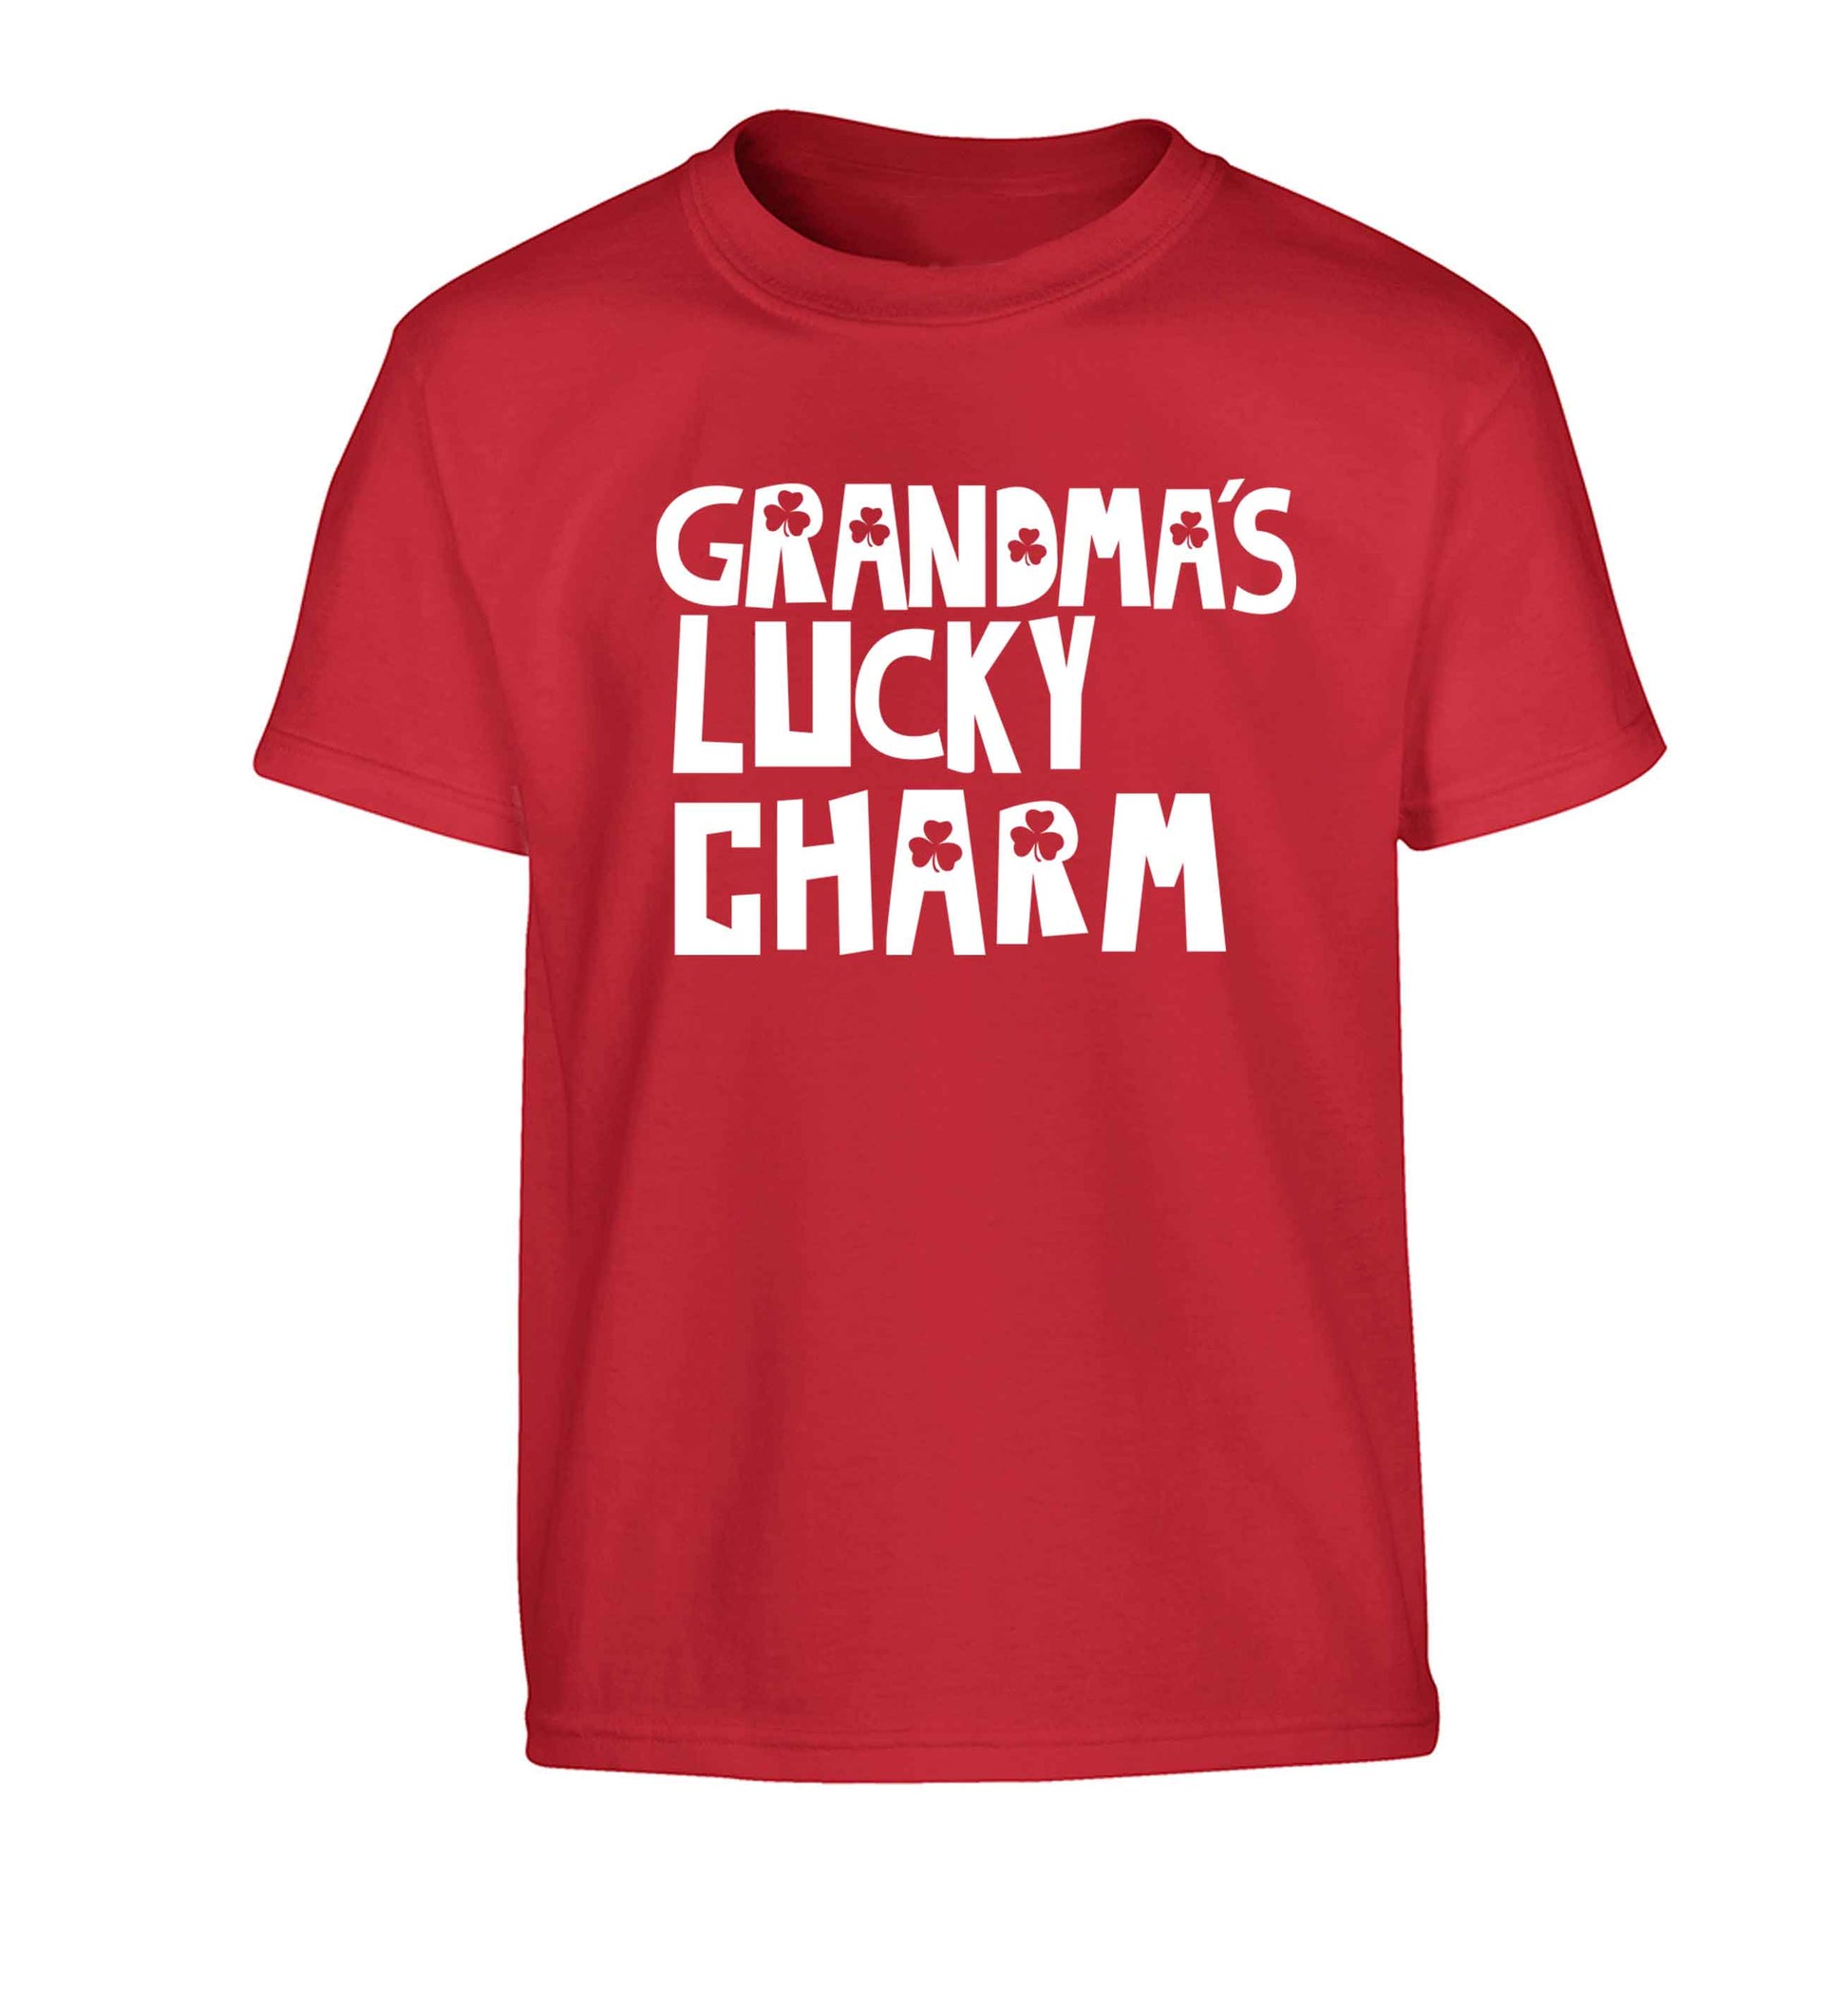 Grandma's lucky charm Children's red Tshirt 12-13 Years